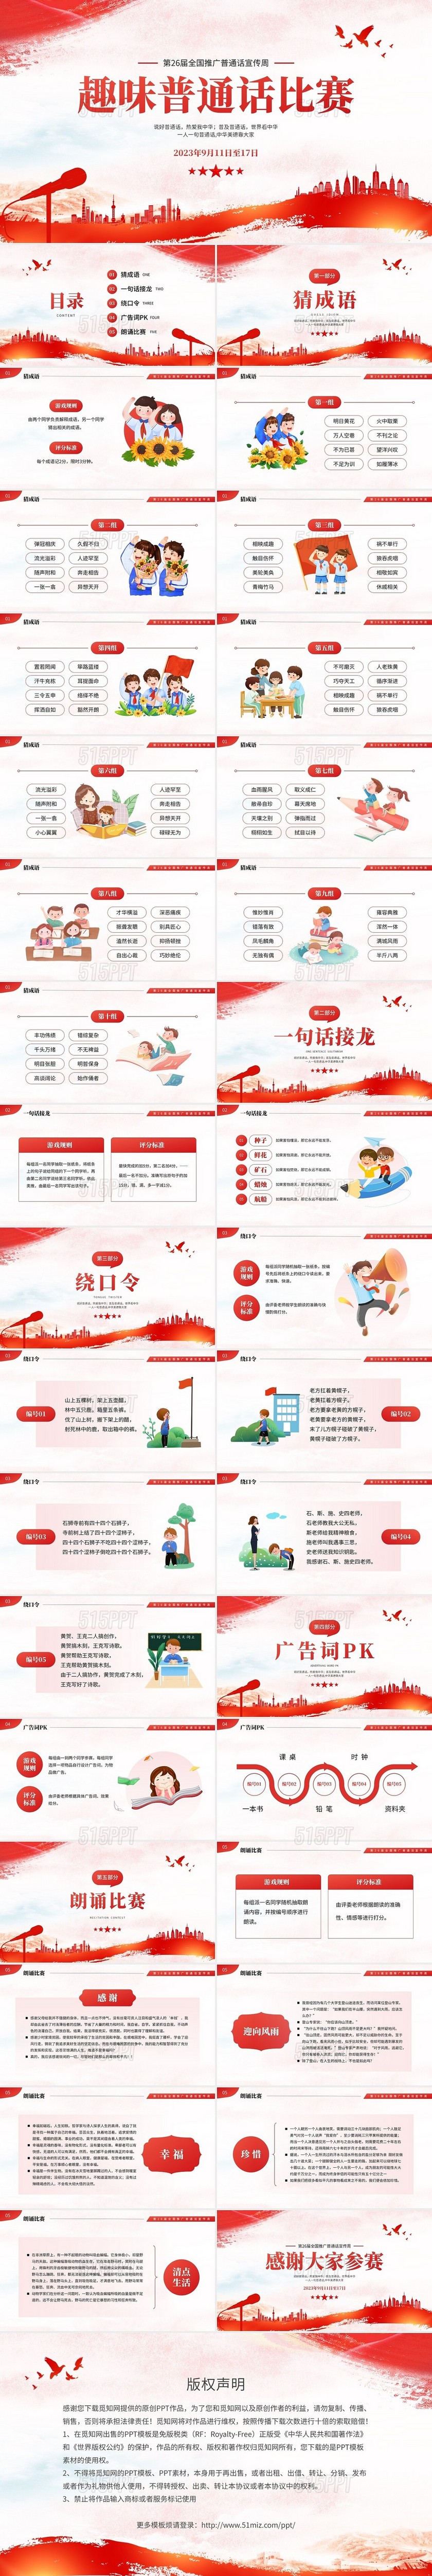 红色全国推广普通话宣传周校园普通话比赛PPT模板